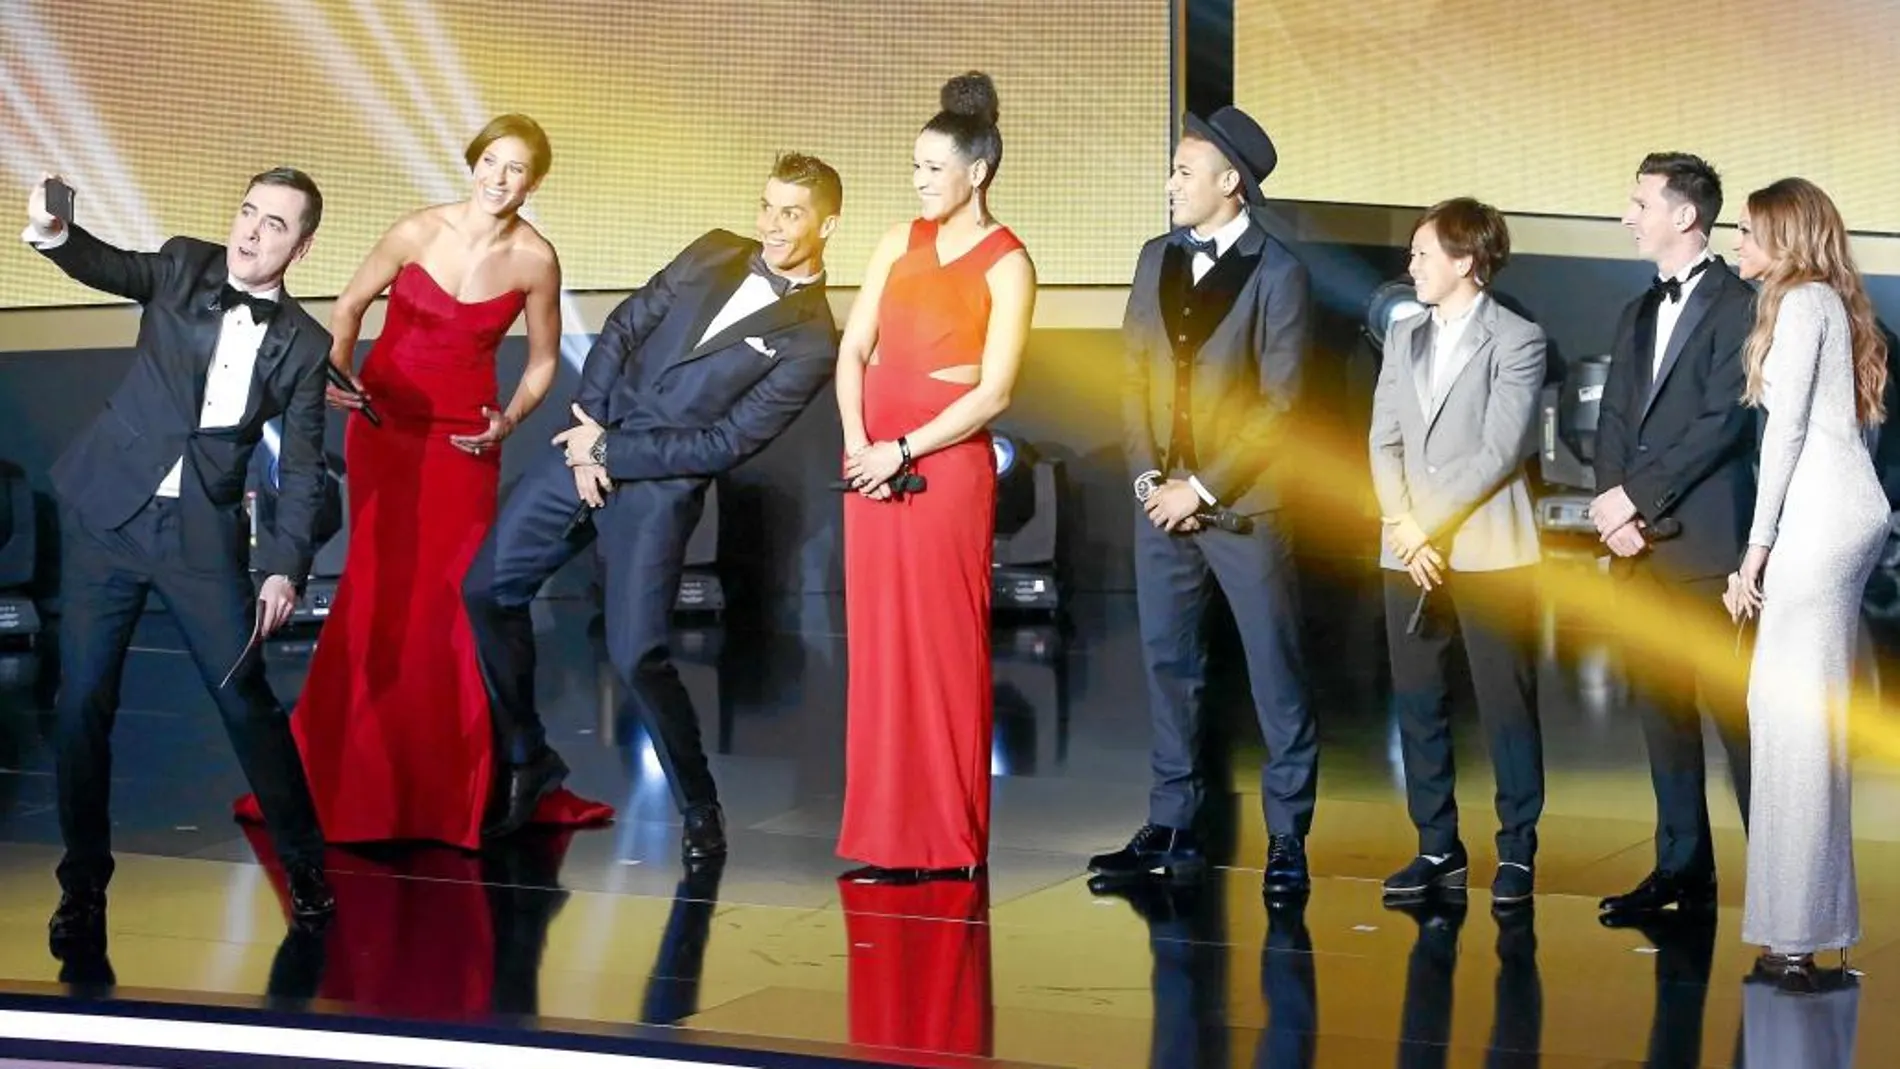 El presentador de la gala, James Nesbitt, se hizo un selfie con los candidatos en categoría masculina y femenina